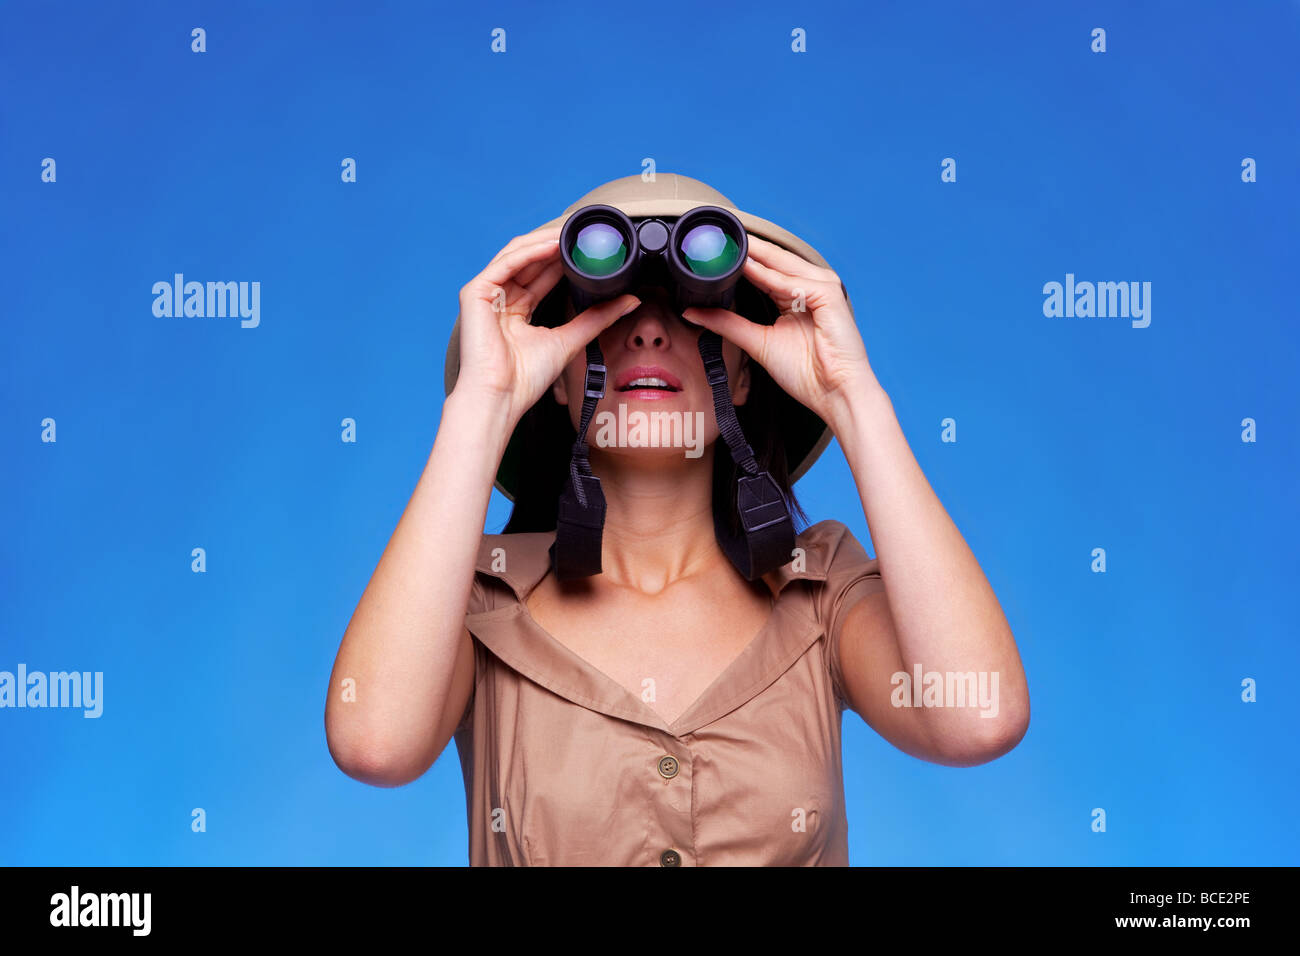 Una donna che indossa un casco albedo ricerca con un paio di binocoli sfondo blu con spazio di copia Foto Stock